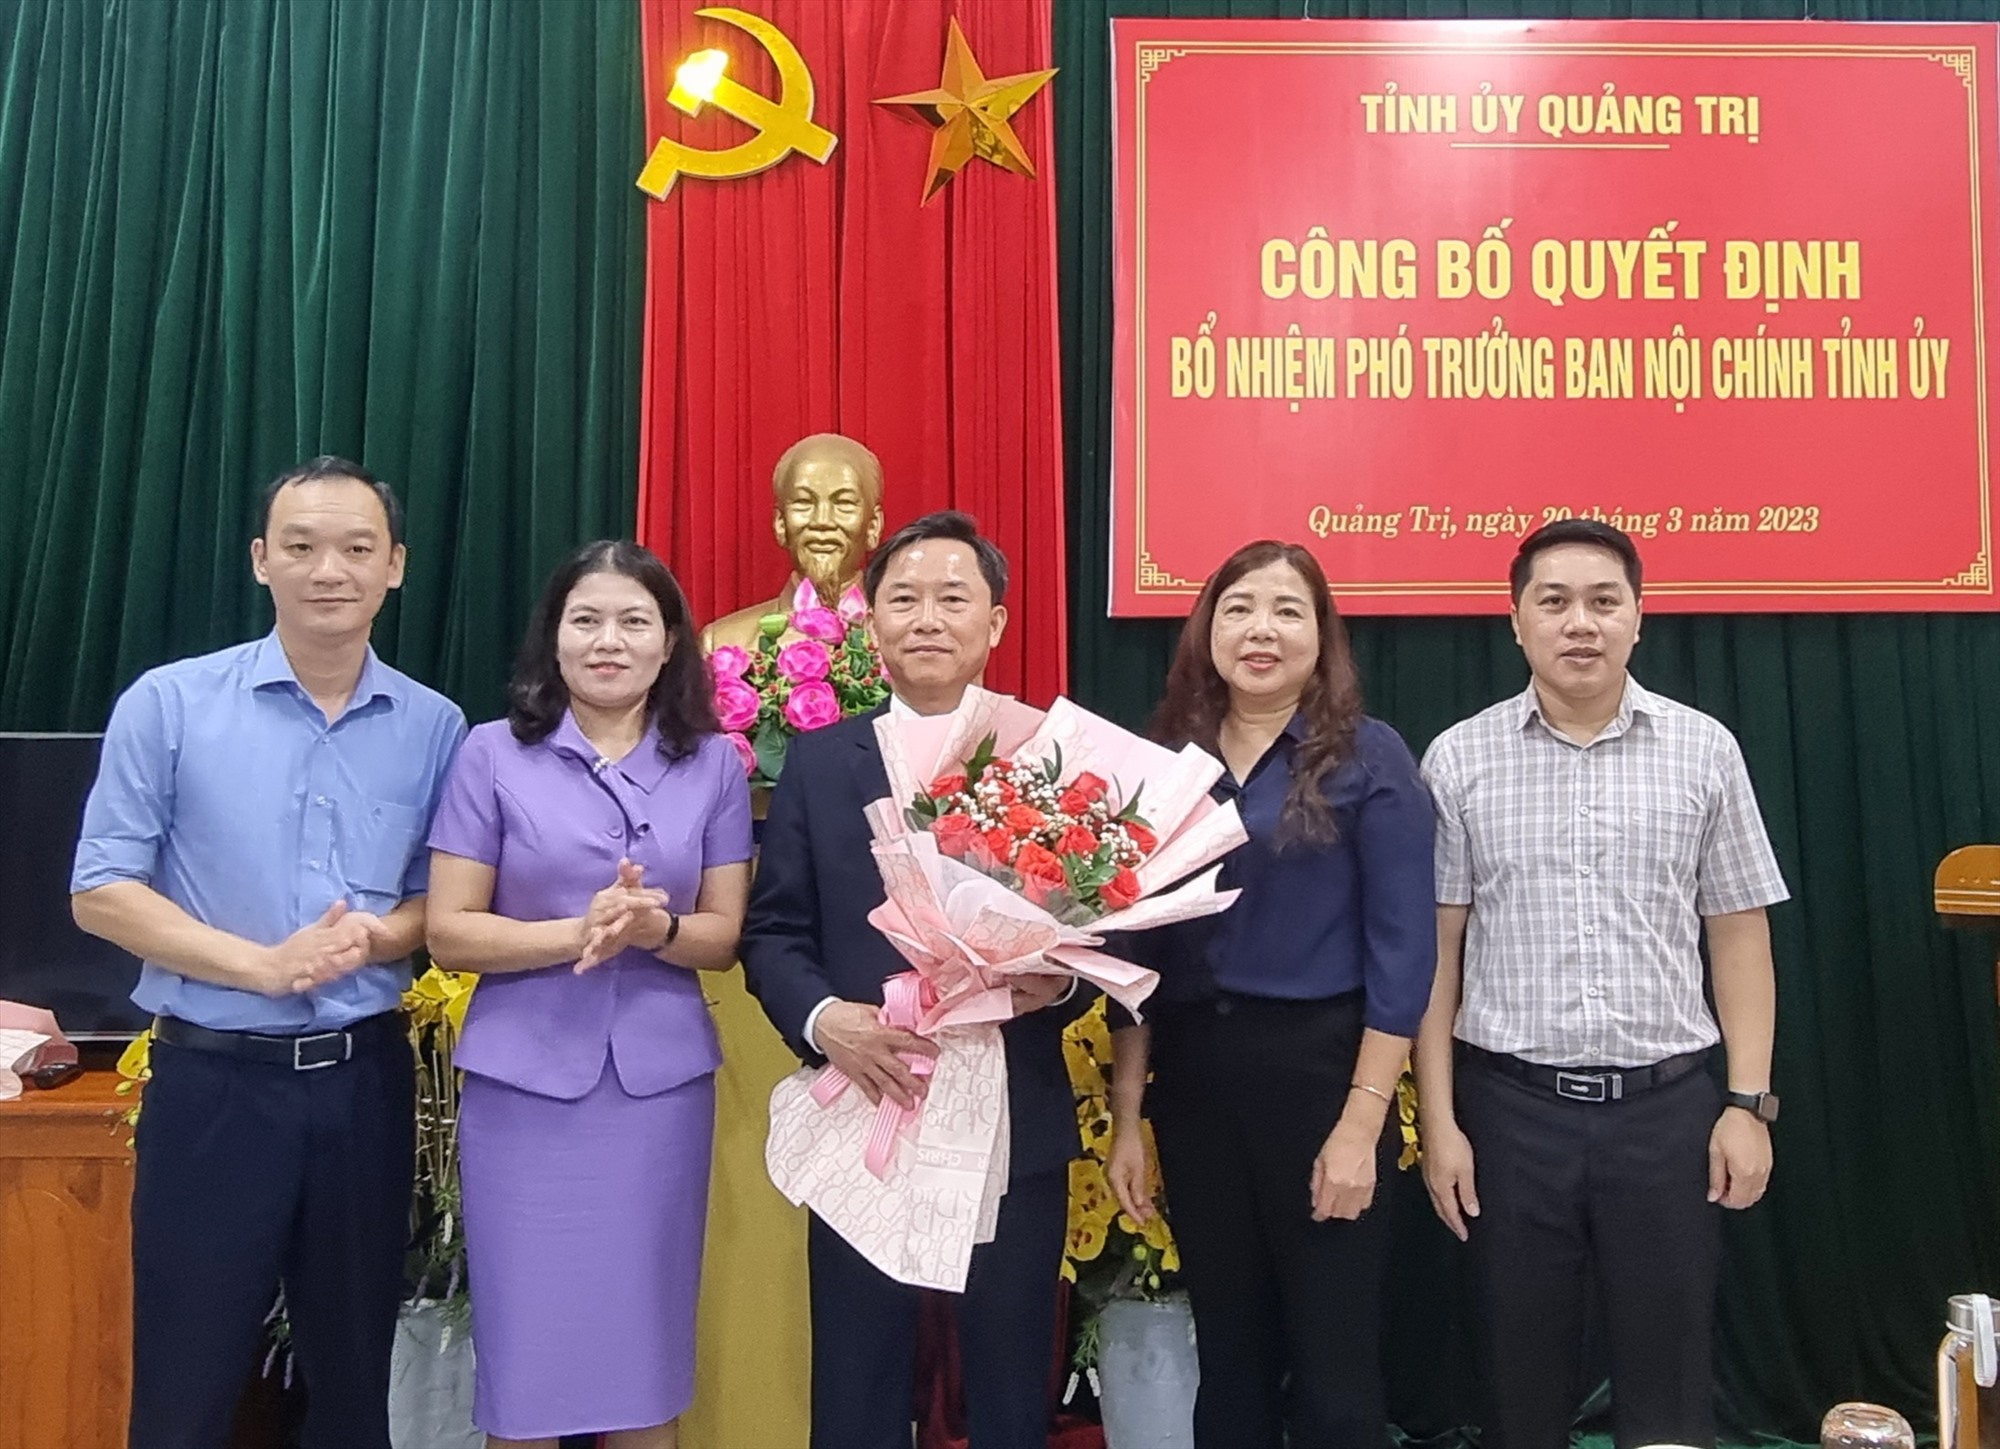 Trưởng Ban Nội chính Tỉnh ủy Ly Kiều Vân tặng hoa chúc mừng tân Phó Trưởng Ban Nội chính Tỉnh ủy Hồ Trung - Ảnh: K.S